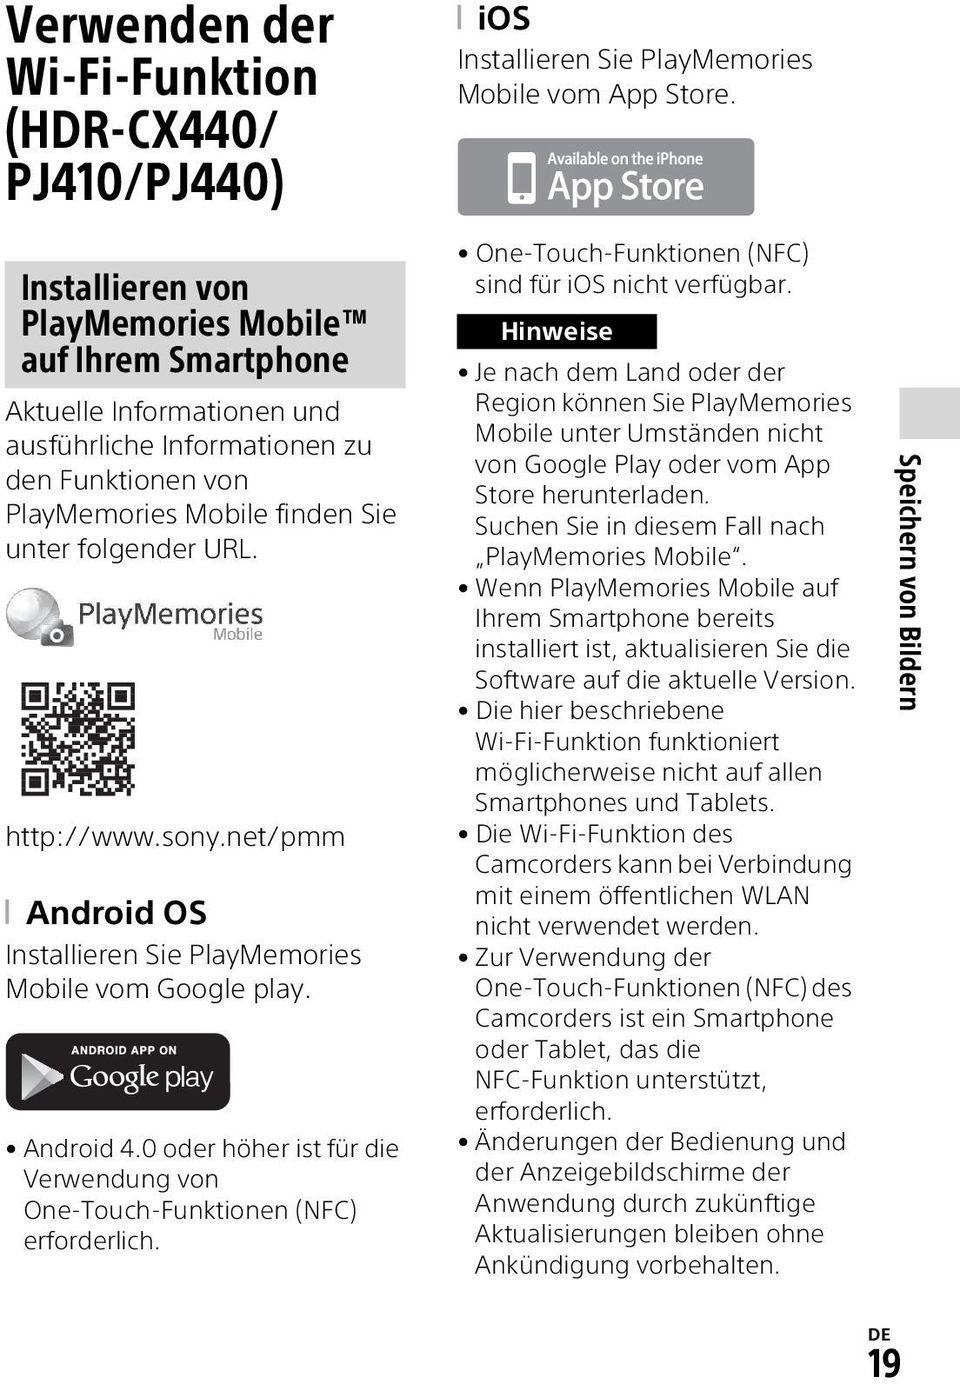 sony.net/pmm Android OS Installieren Sie PlayMemories Mobile vom Google play. Android 4.0 oder höher ist für die Verwendung von One-Touch-Funktionen (NFC) erforderlich.